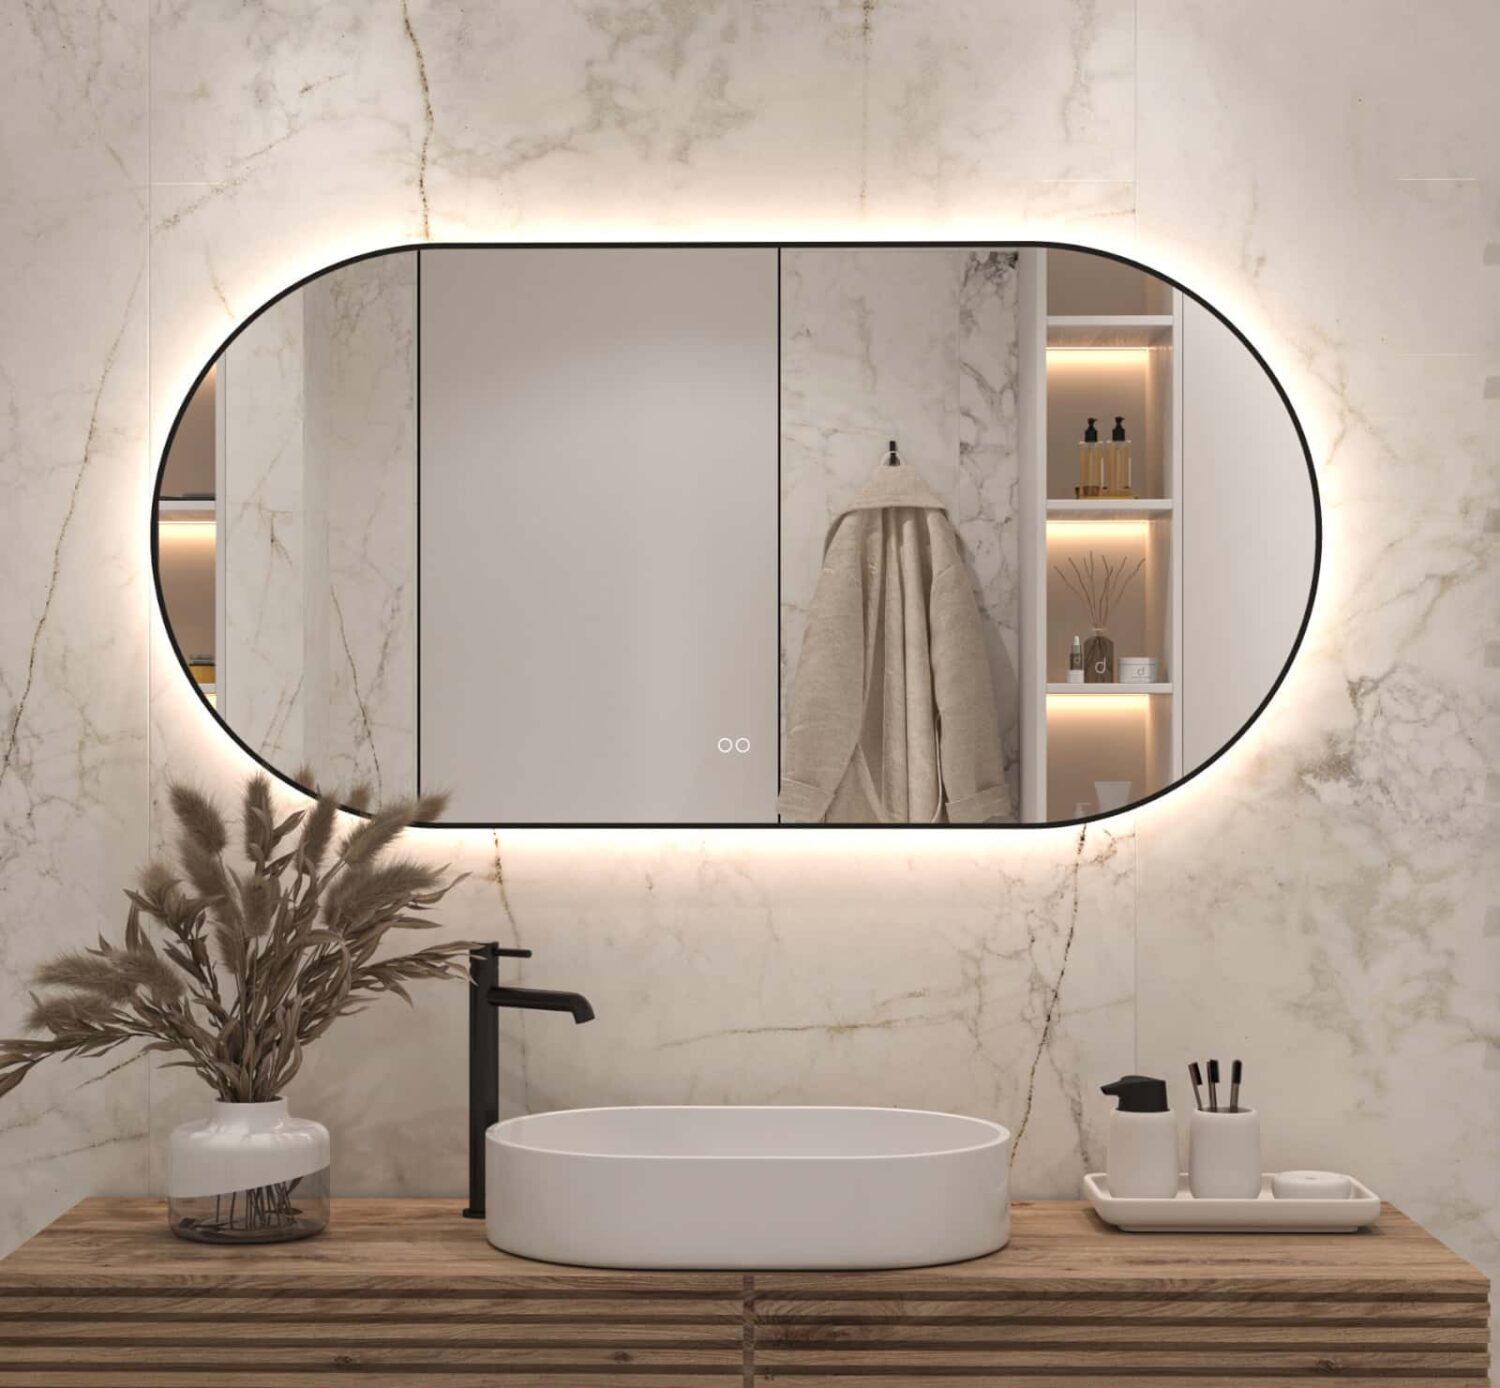 Burgerschap Nadenkend Snoep Ovale badkamerspiegel met LED verlichting, verwarming, touch sensor,  kleurenwissel en mat zwart frame 140x70 cm - Designspiegels